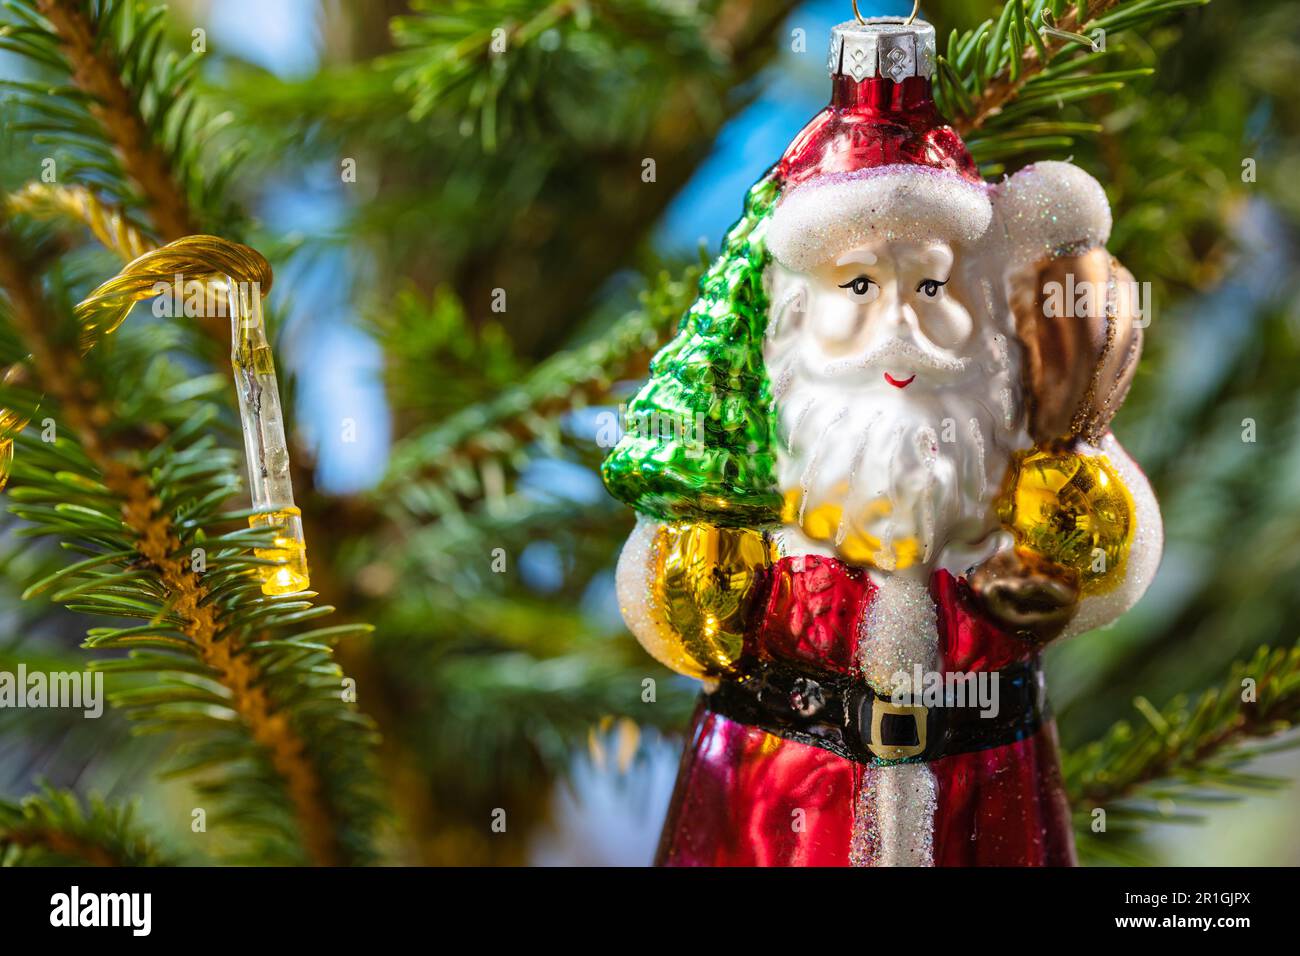 weihnachtsmann-Figur aus Glas und Lampe auf natürlichem weihnachtsbaum aus  nächster Nähe Stockfotografie - Alamy